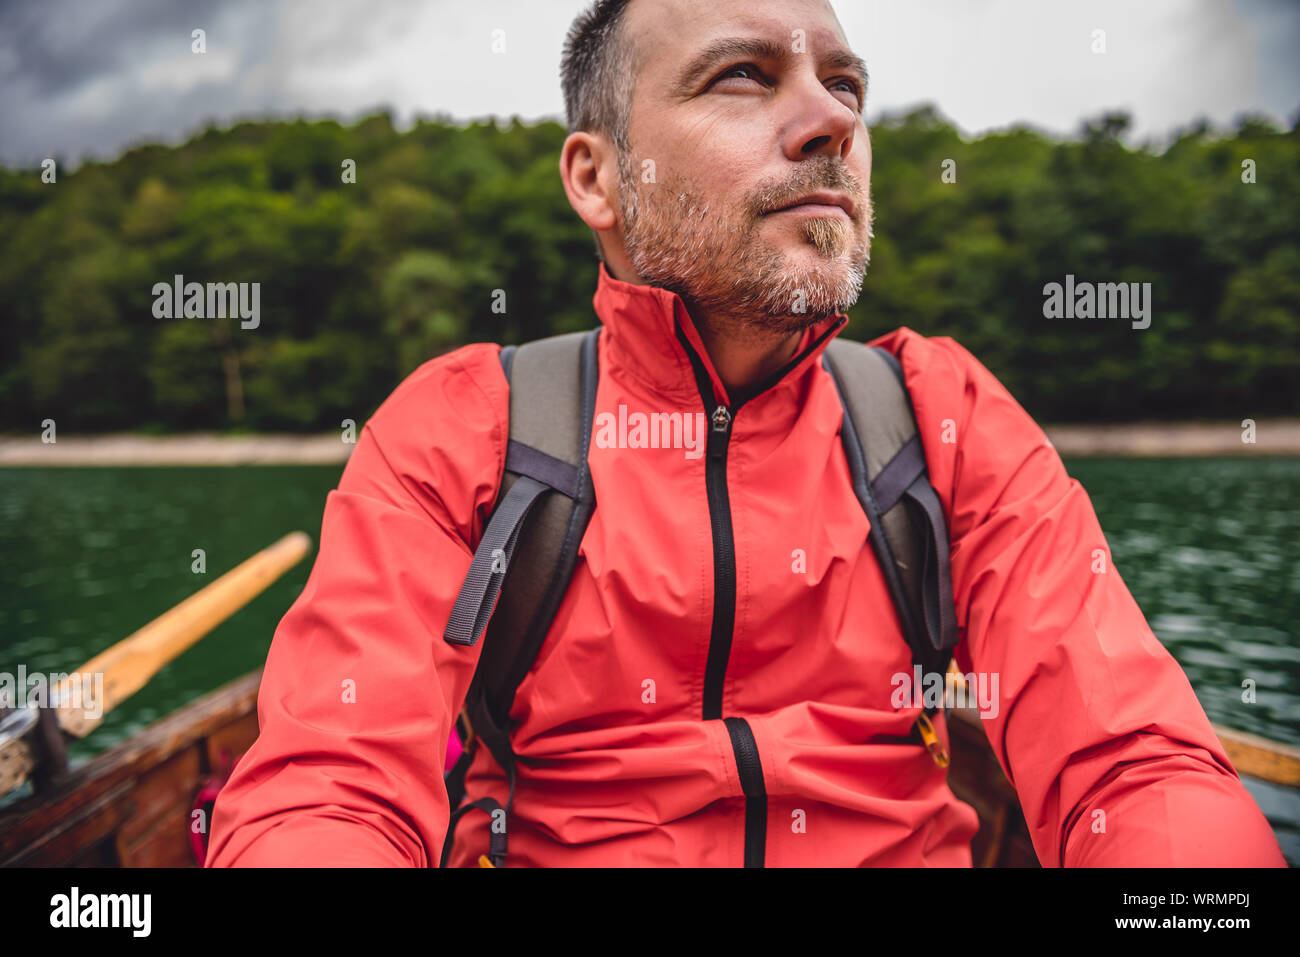 Man wearing red jacket enjoying boat ride on a mountain lake Stock Photo